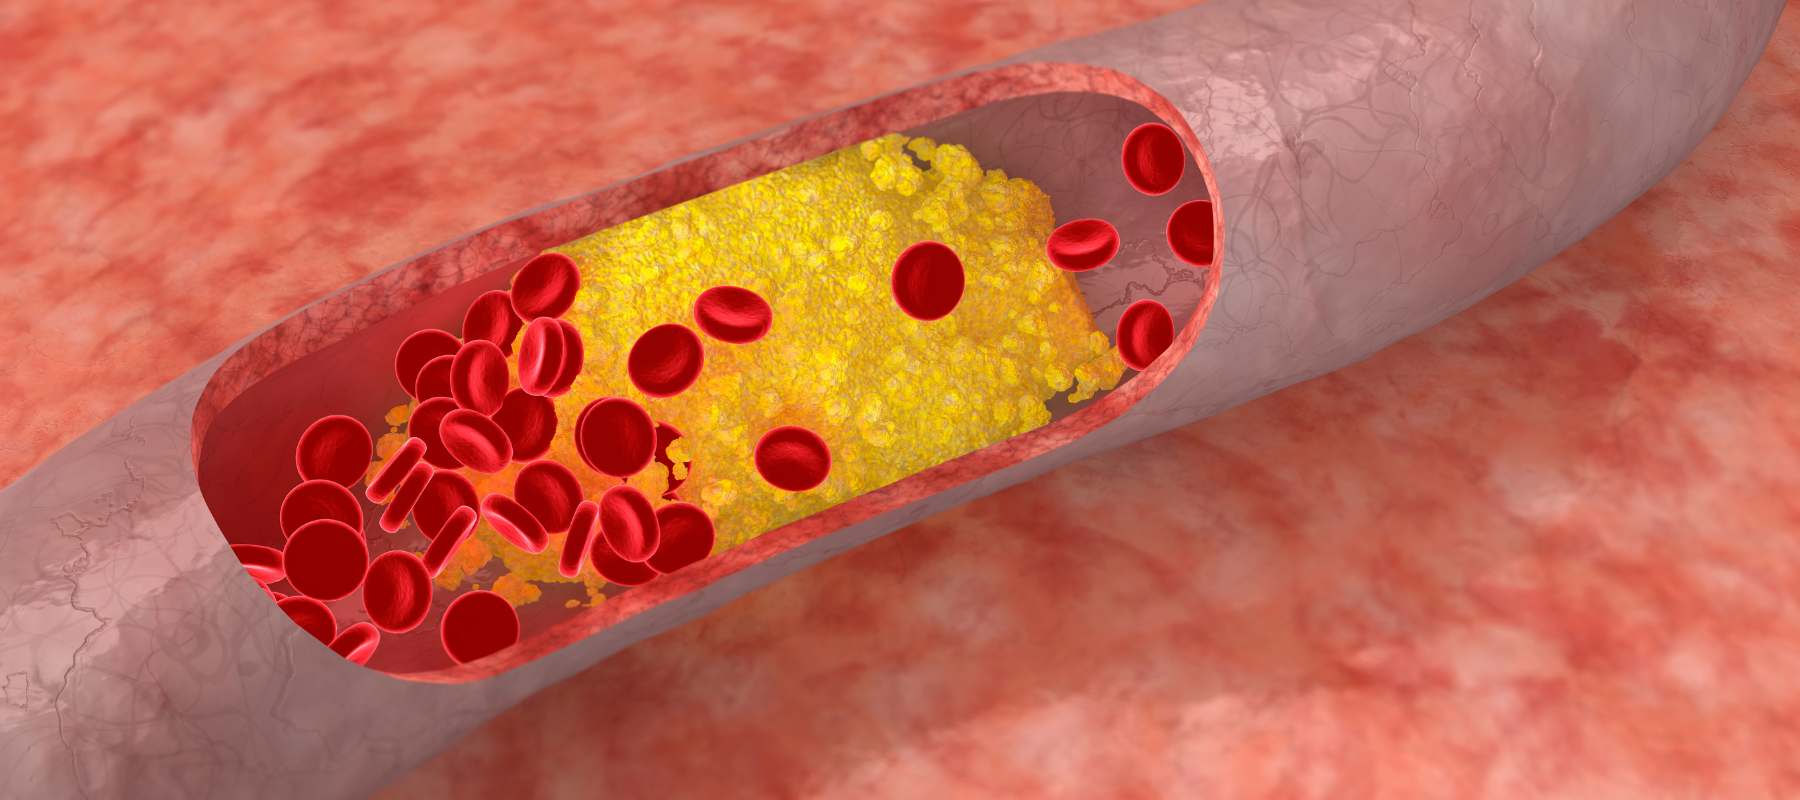 Cholesterin senken Ernährung – Zu hohen Cholesterinspiegel senken mit diesen Tipps